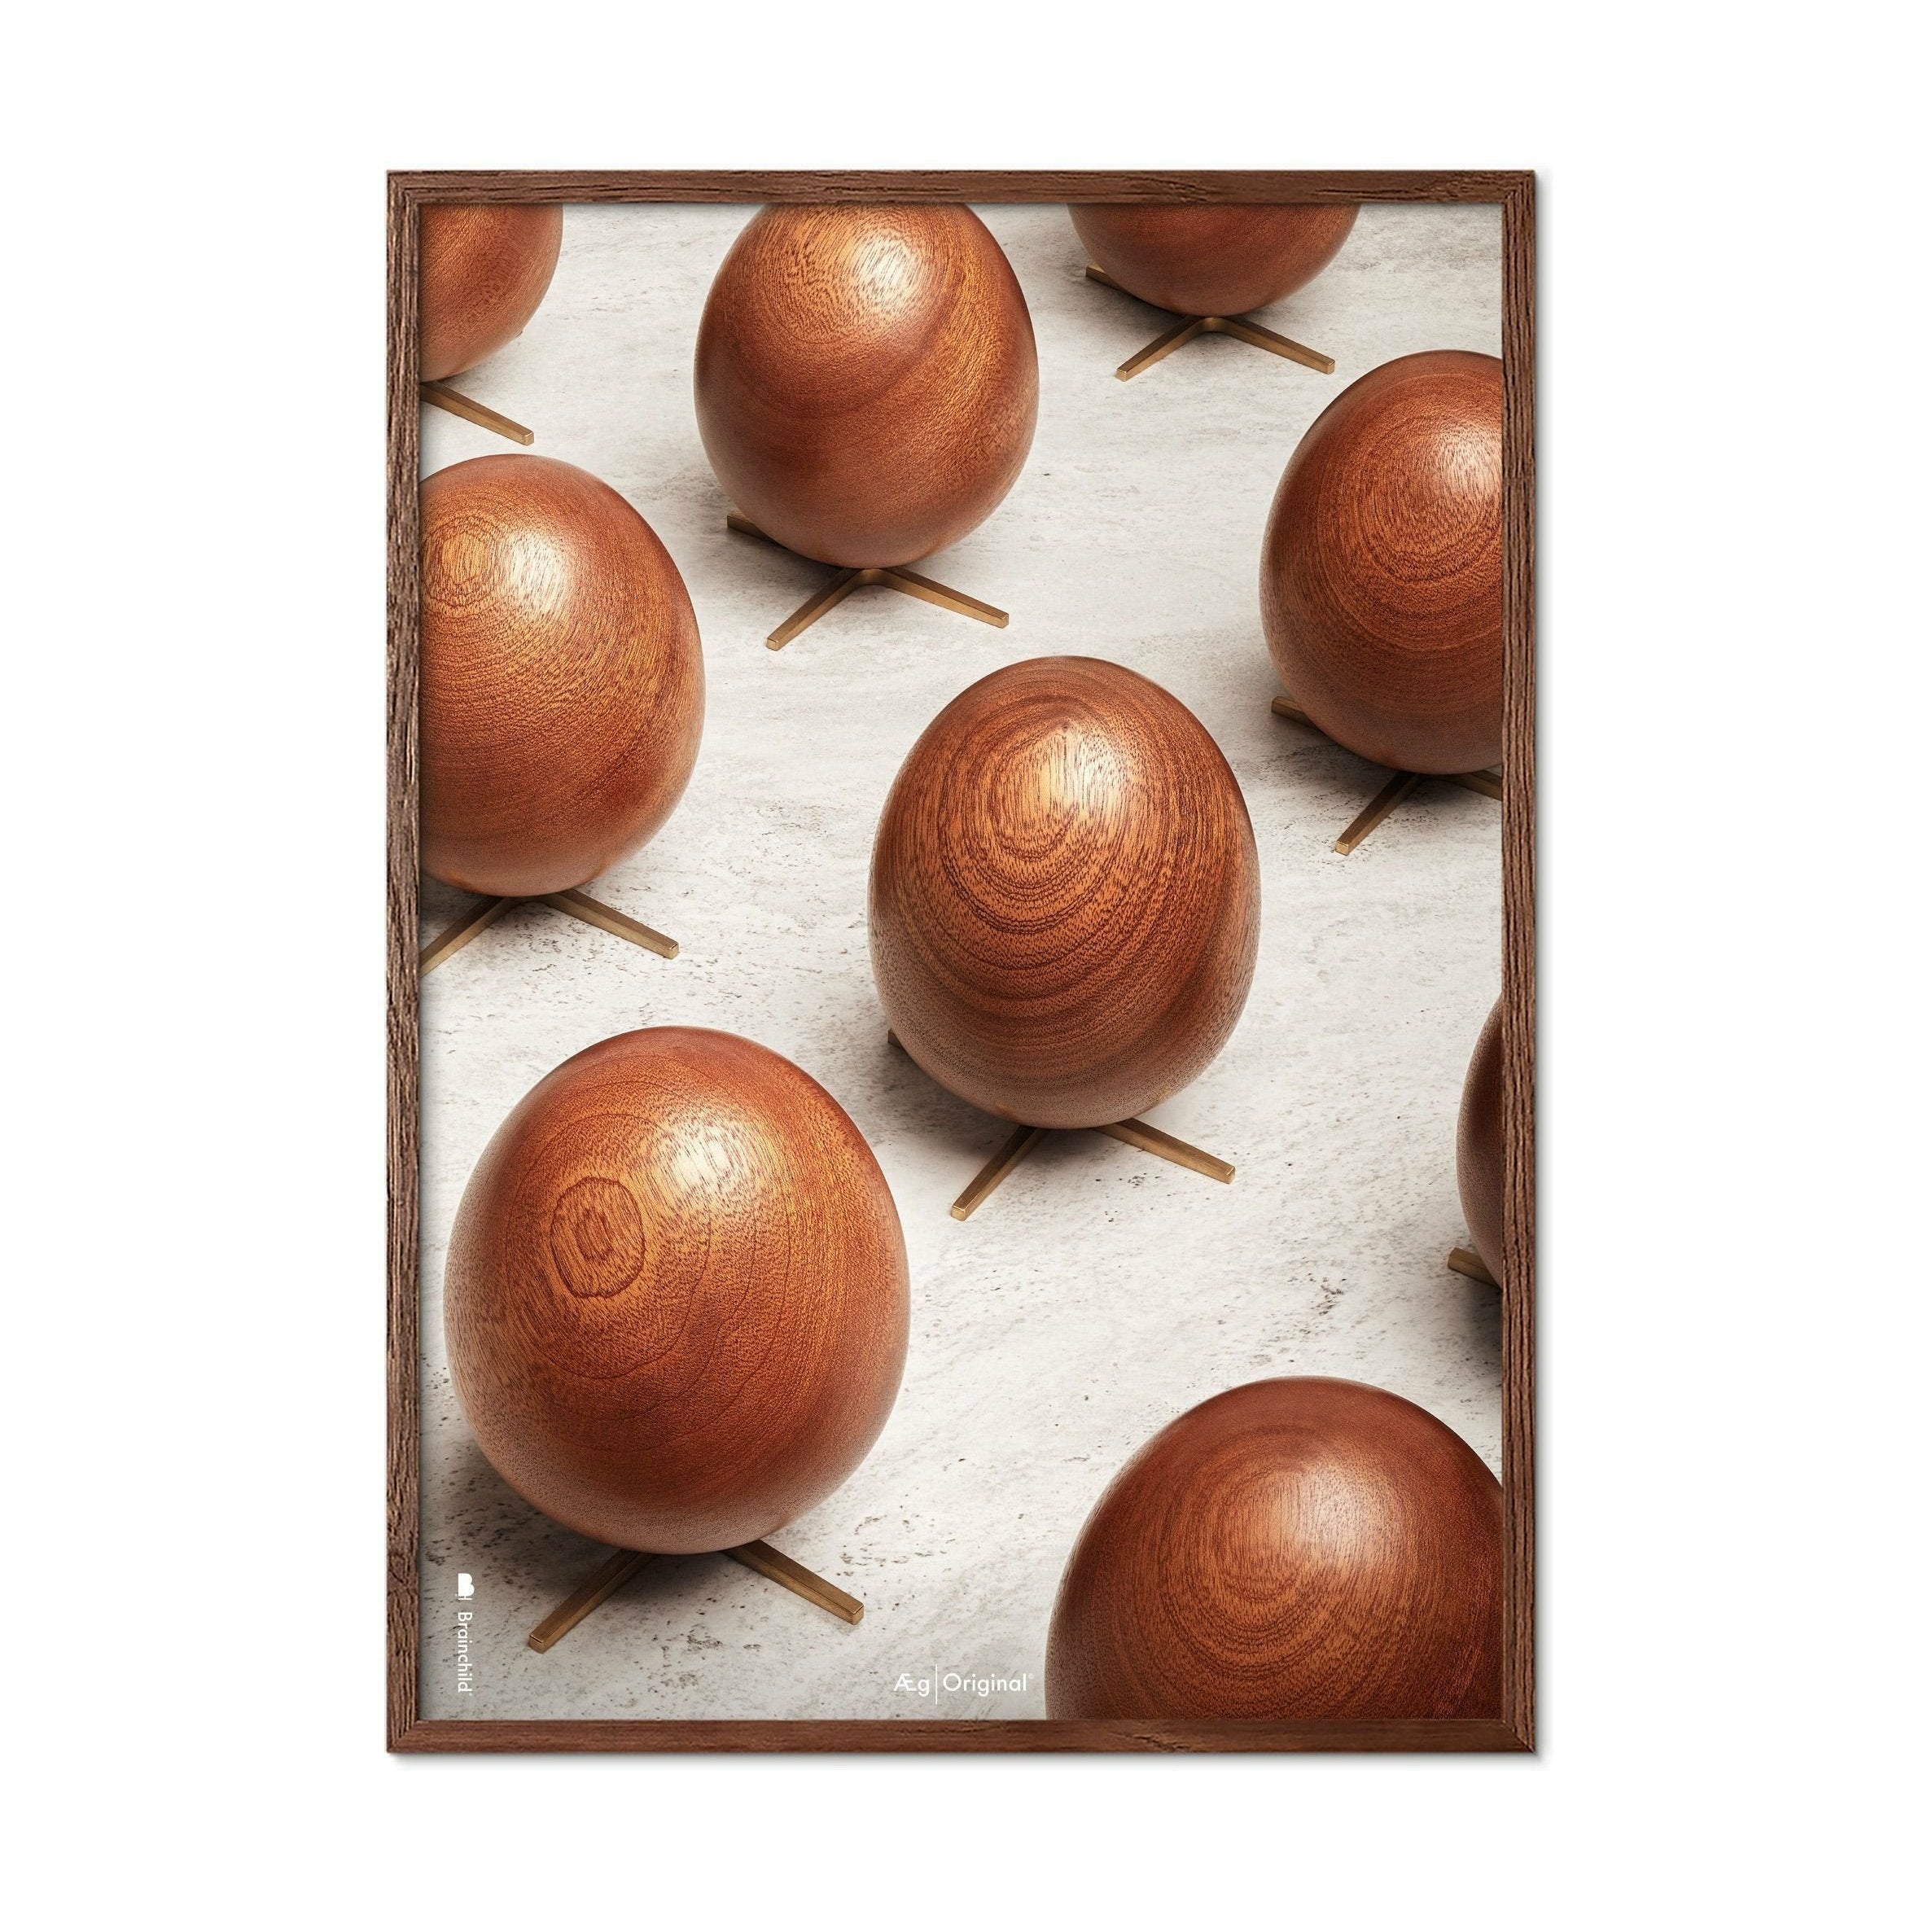 Póster de desfile de huevos de creación, marco hecho de madera oscura, 50x70 cm